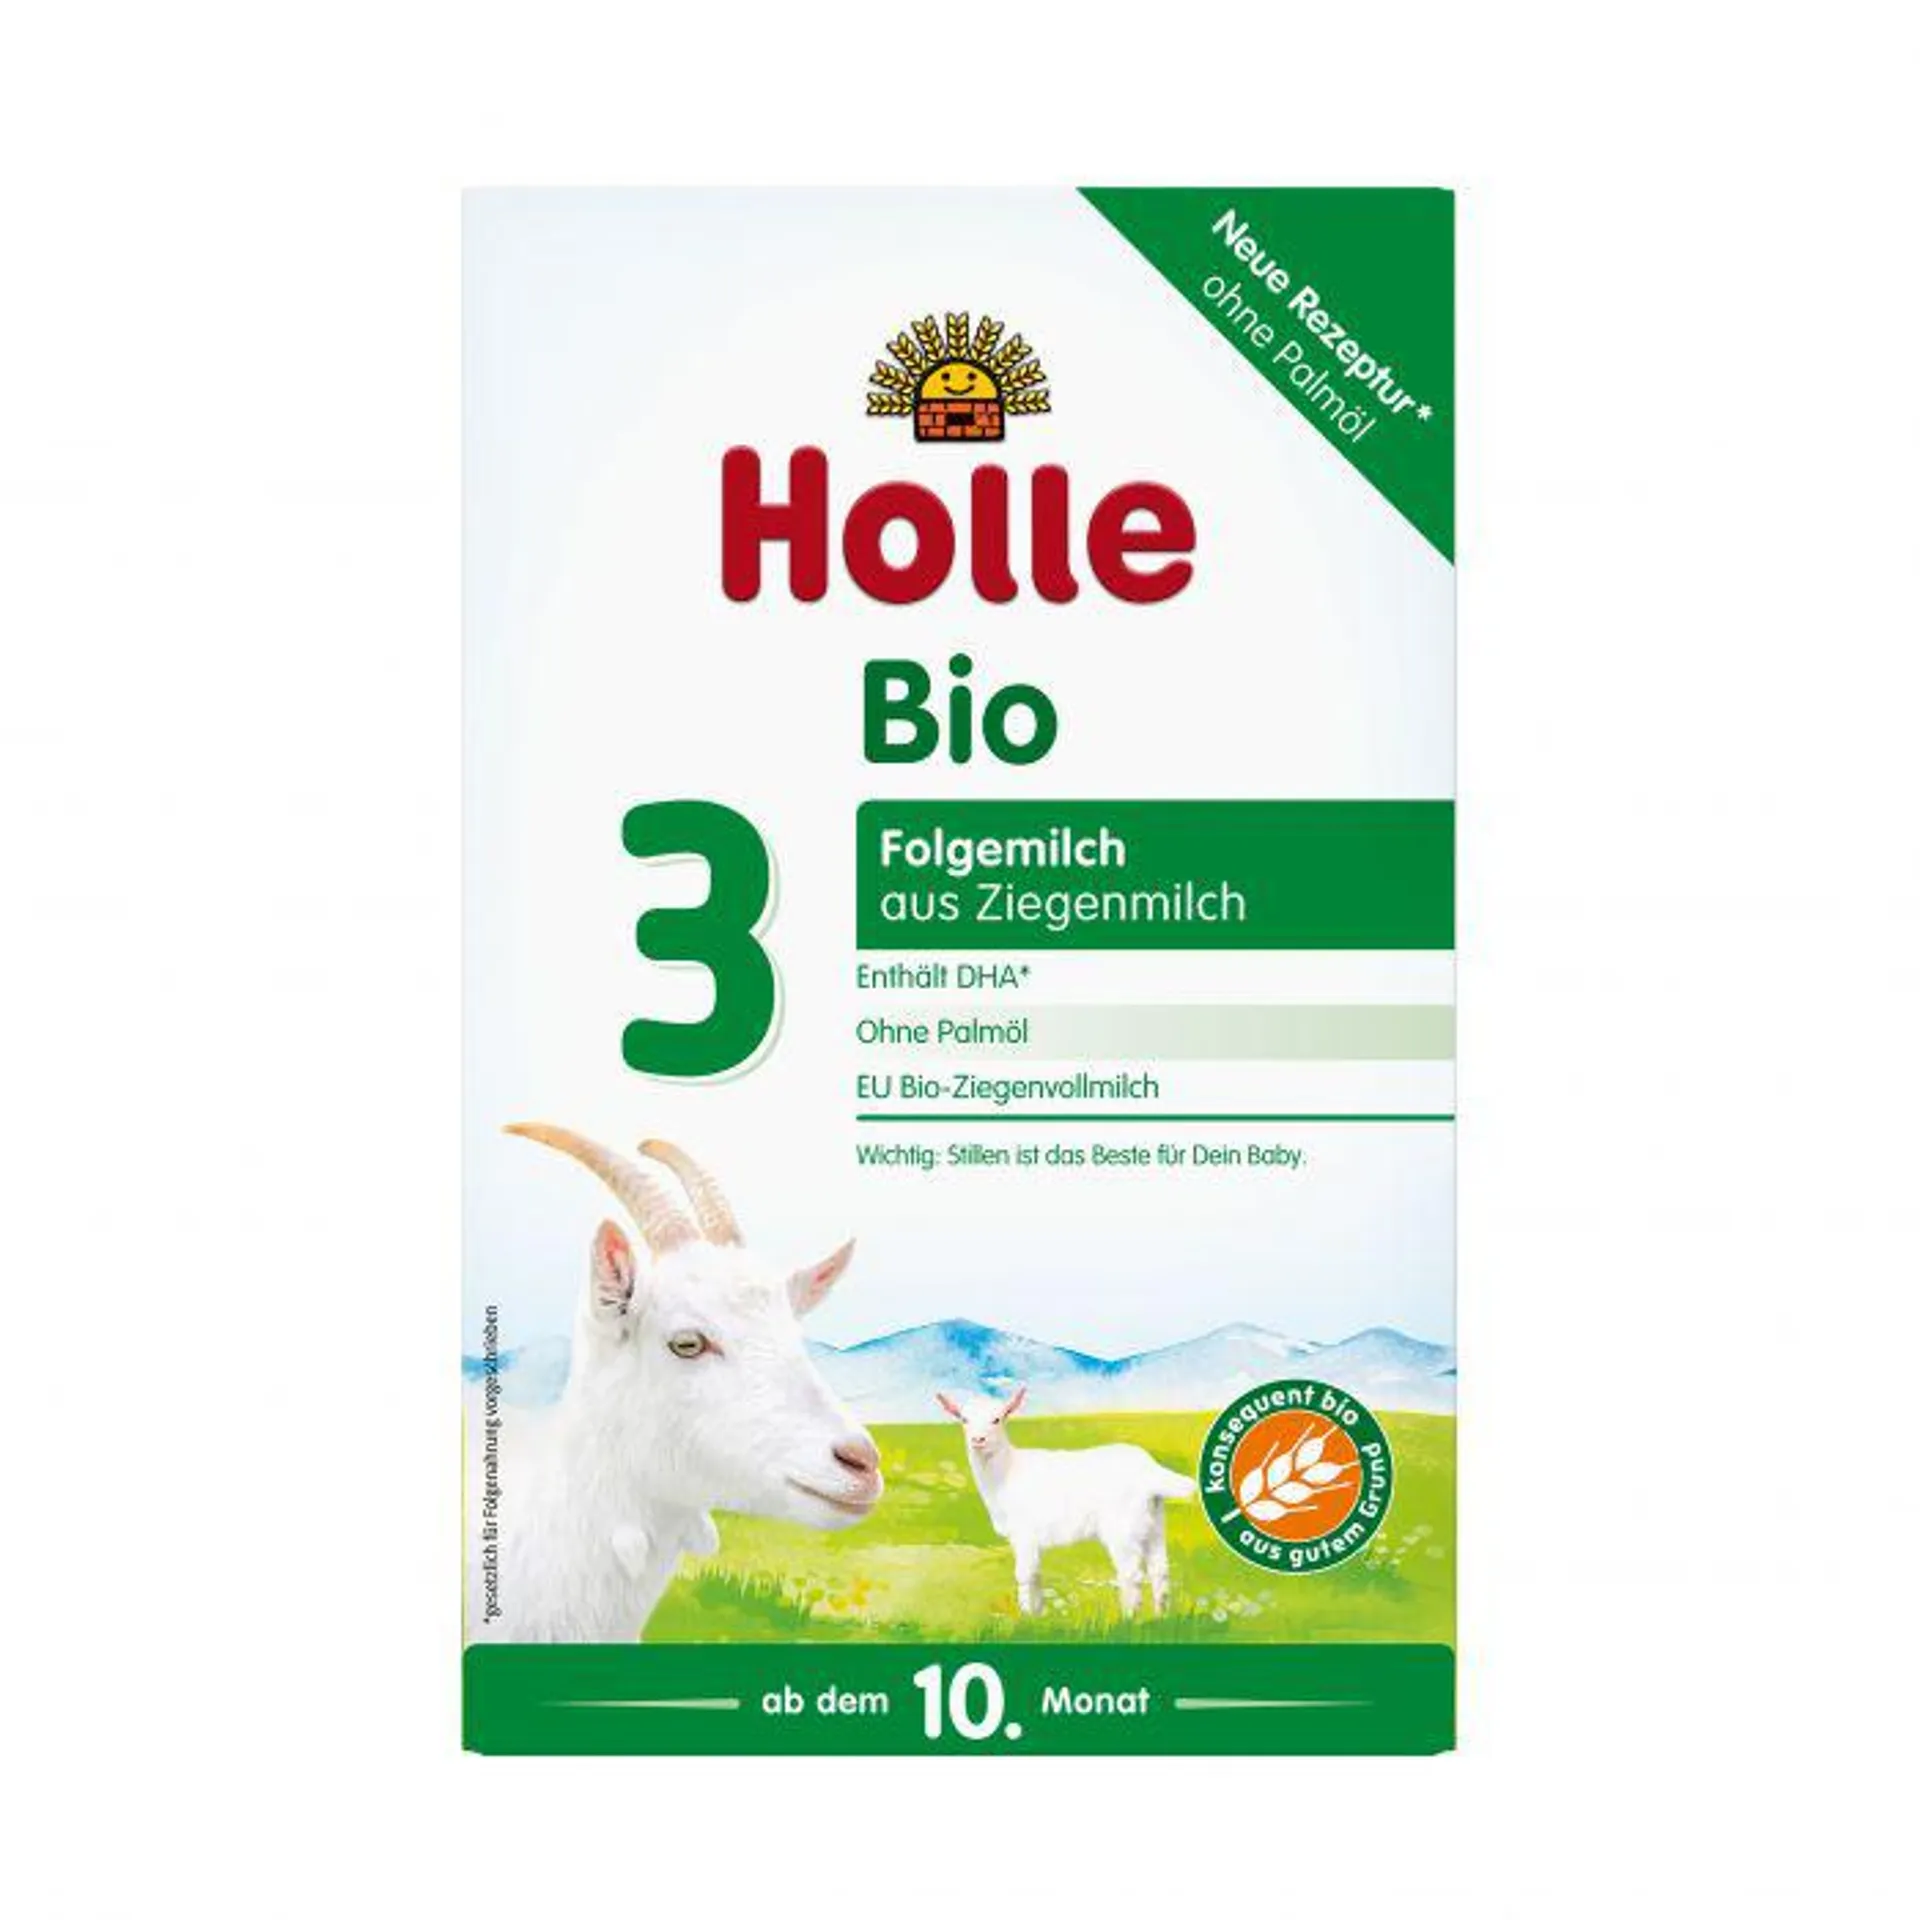 Holle Bio-Folgemilch 3 aus Ziegenmilch 400g